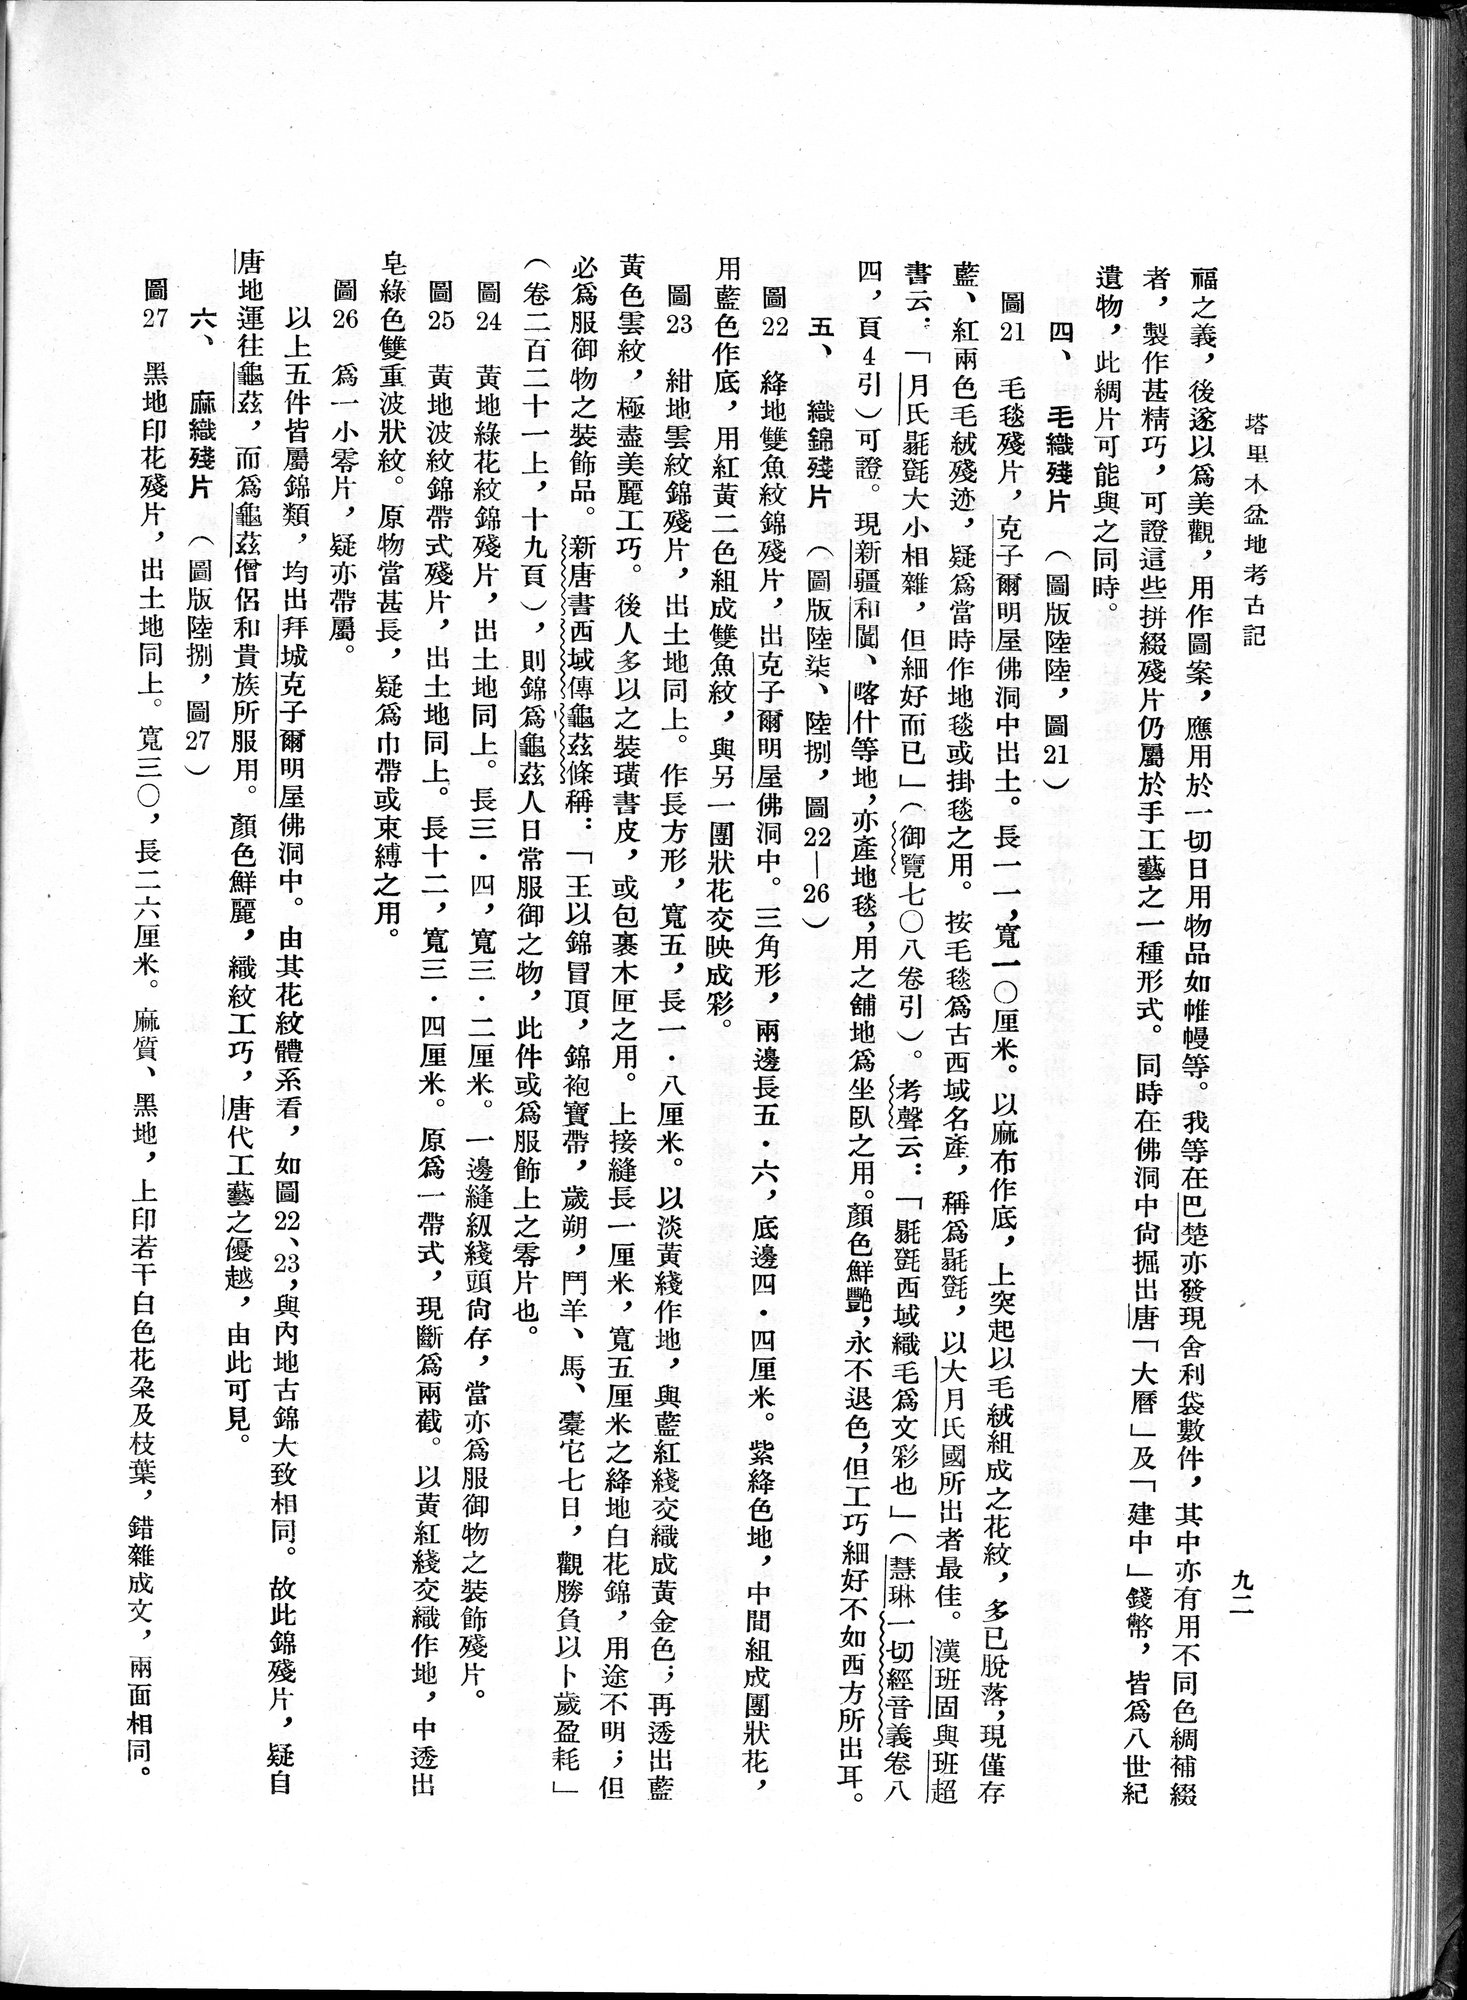 塔里木盆地考古記 : vol.1 / Page 156 (Grayscale High Resolution Image)